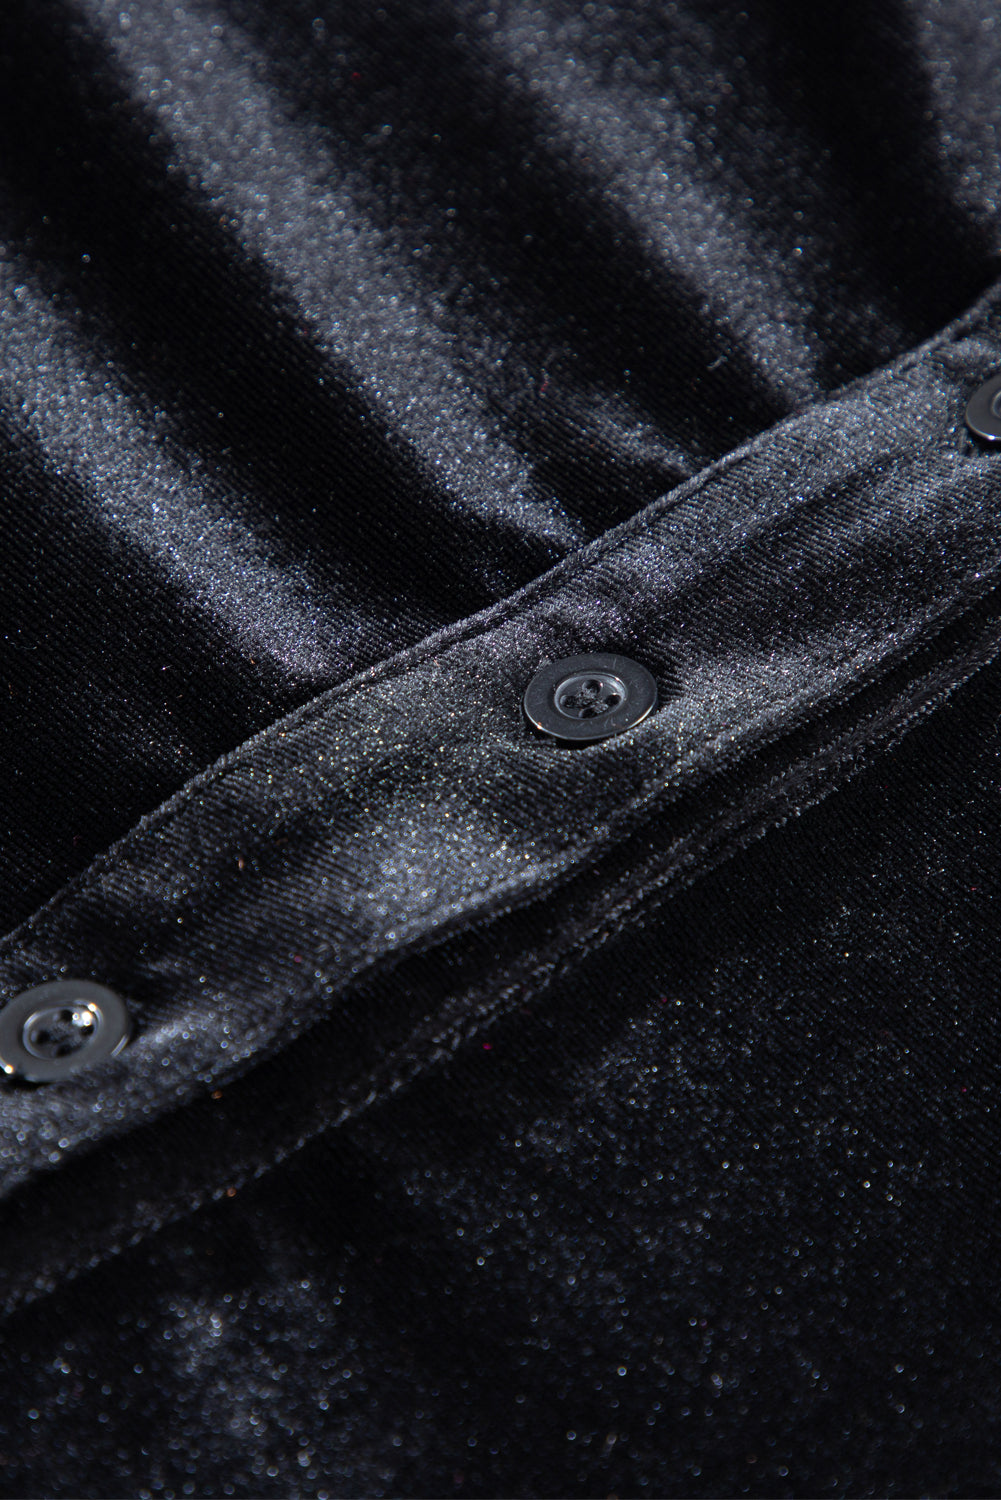 Camicia peplo in velluto con bottoni e maniche a sbuffo in paillettes nere